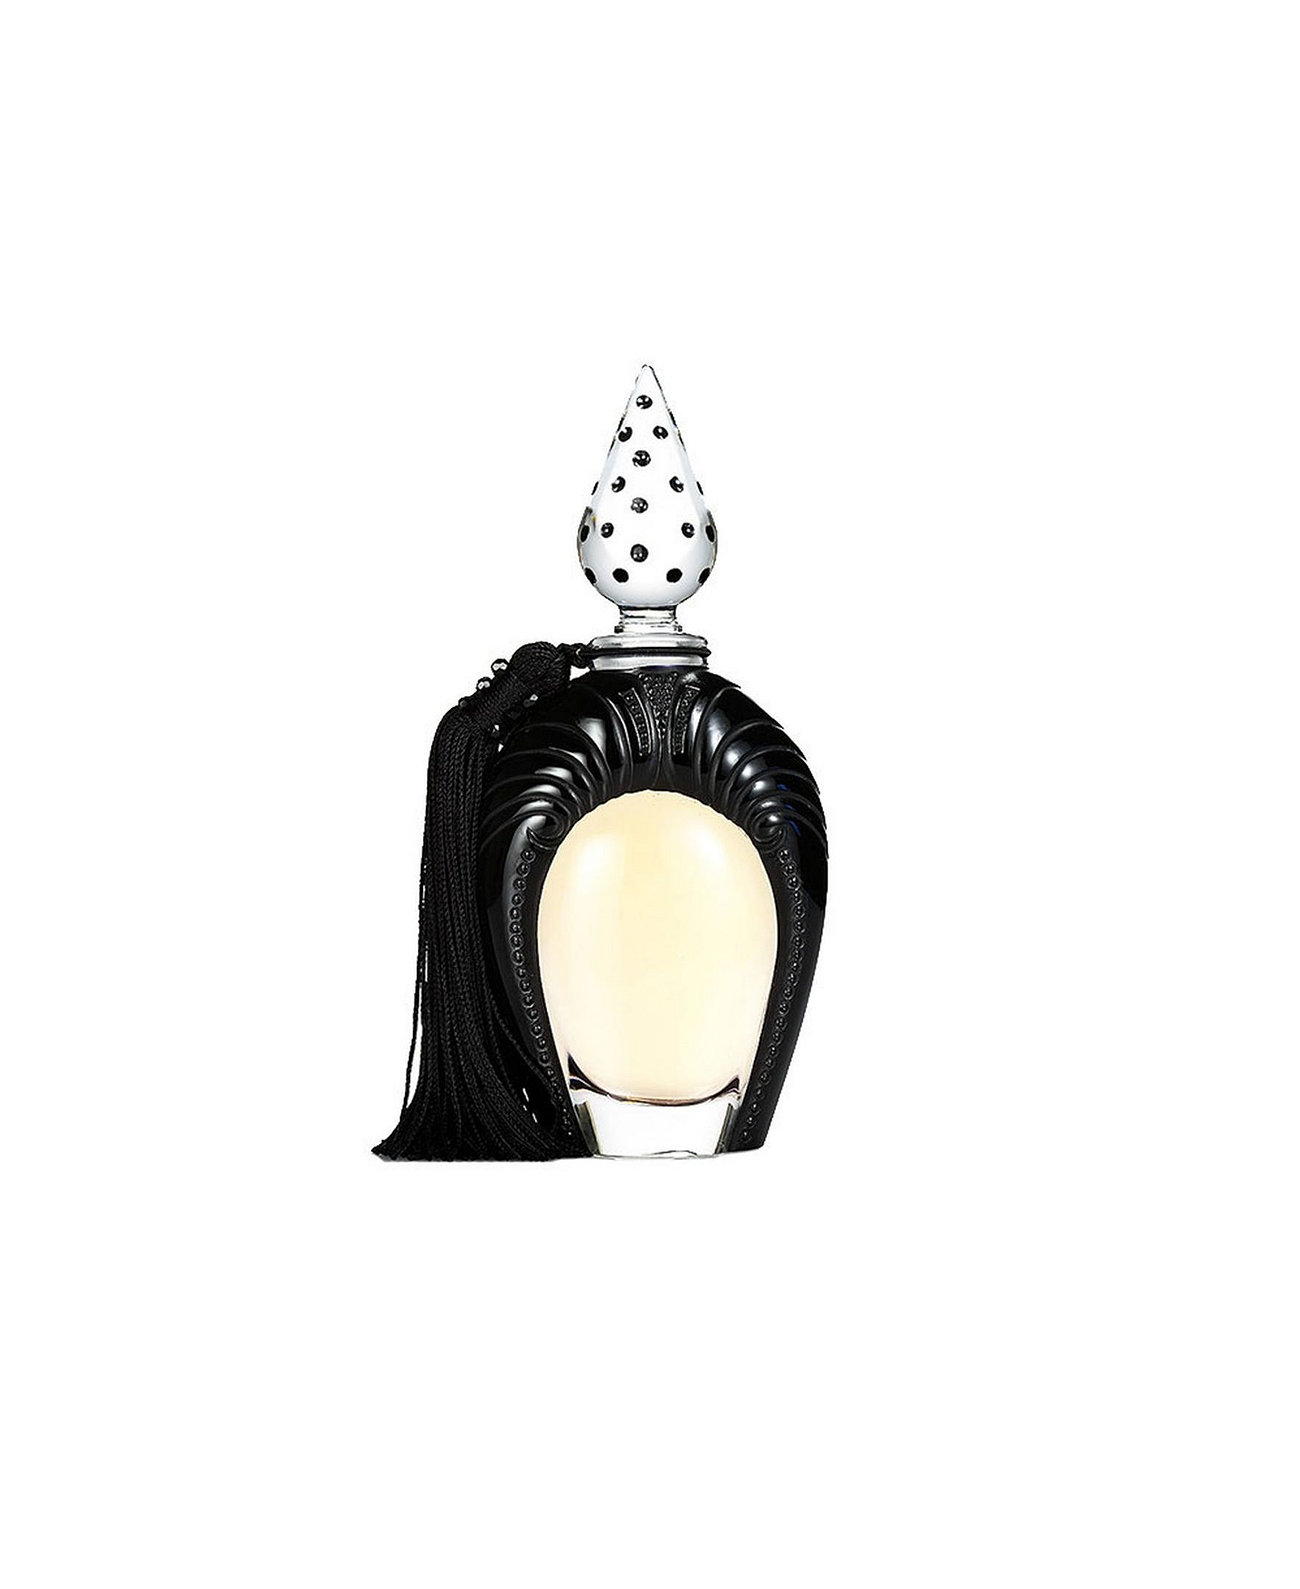 Духи De Lalique "Sheherazade", ограниченная серия, 2008 г., 0,01 унции / 30 мл Lalique